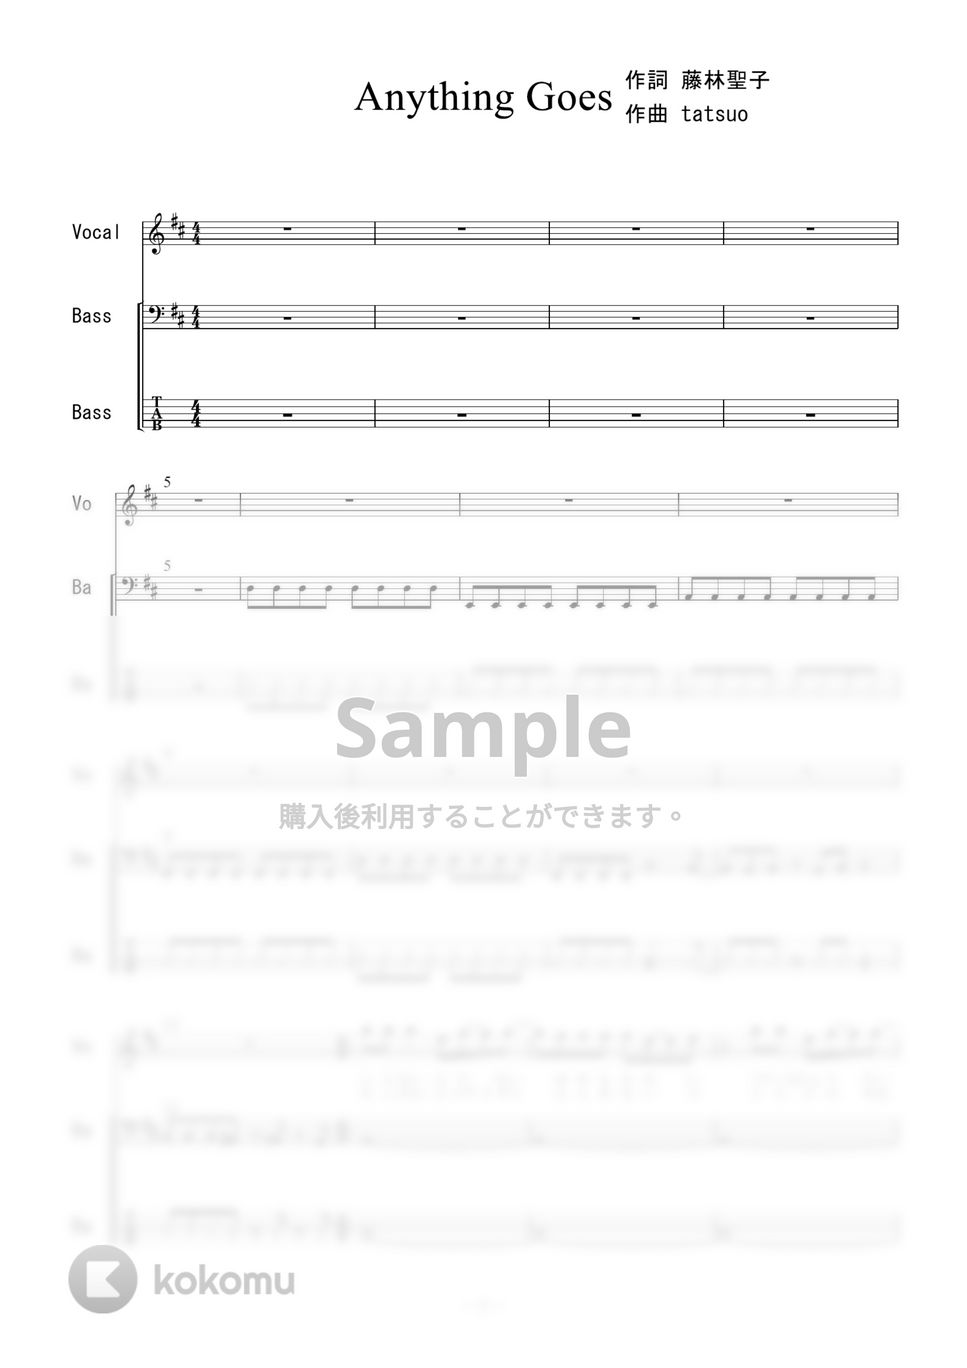 大黒摩季 - Anything Goes! (ベース) by 二次元楽譜製作所